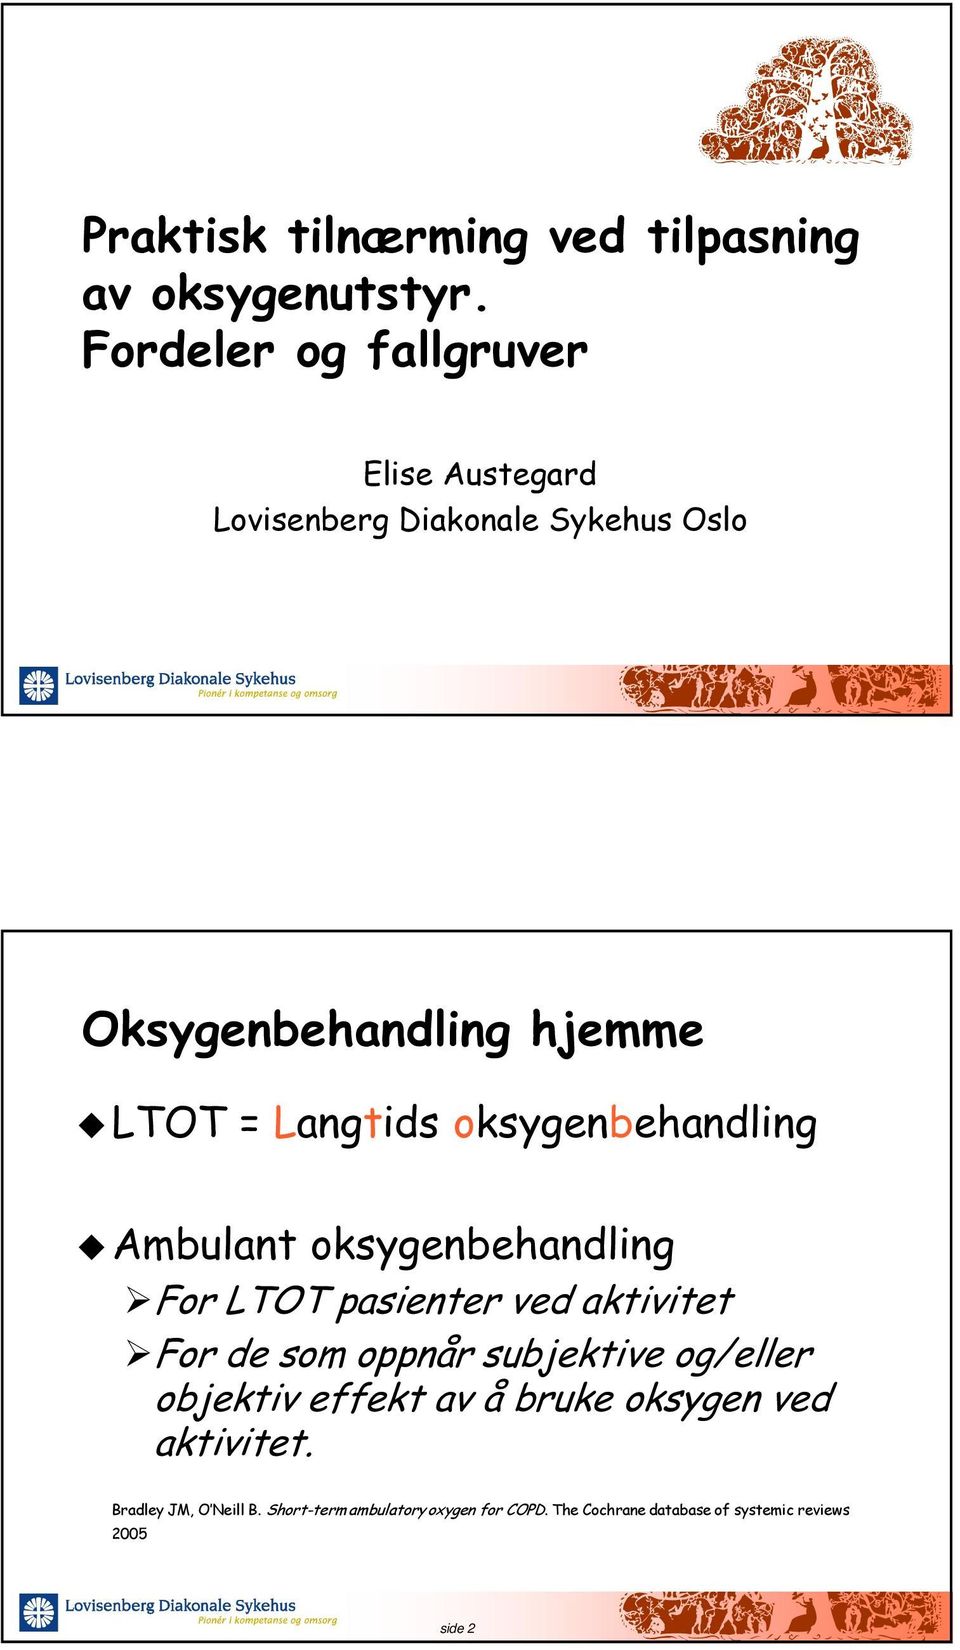 Langtids oksygenbehandling Ambulant oksygenbehandling For LTOT pasienter ved aktivitet For de som oppnår